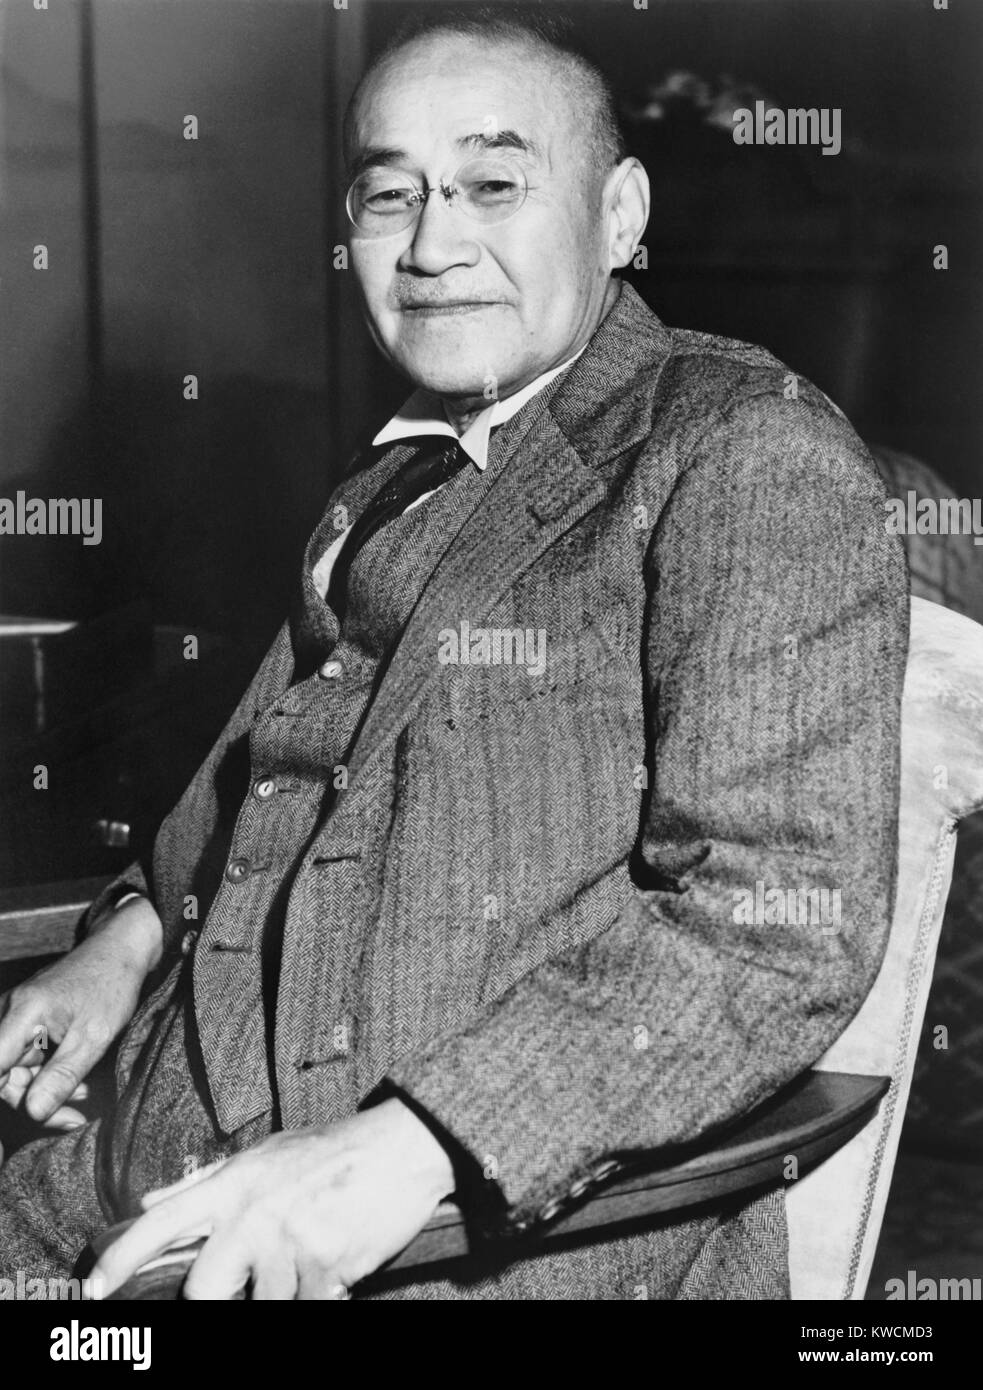 Shigeru Yoshida war Premierminister von Japan von 1946 bis 1947 und von 1948 bis 1954. Während der Nachkriegszeit, Besatzung, sagte er, durch eine "gute Verlierer", den japanischen in Frieden viel von dem, was Sie im Krieg verloren hatte, wiederfindet. - (BSLOC 2014 15 134) Stockfoto